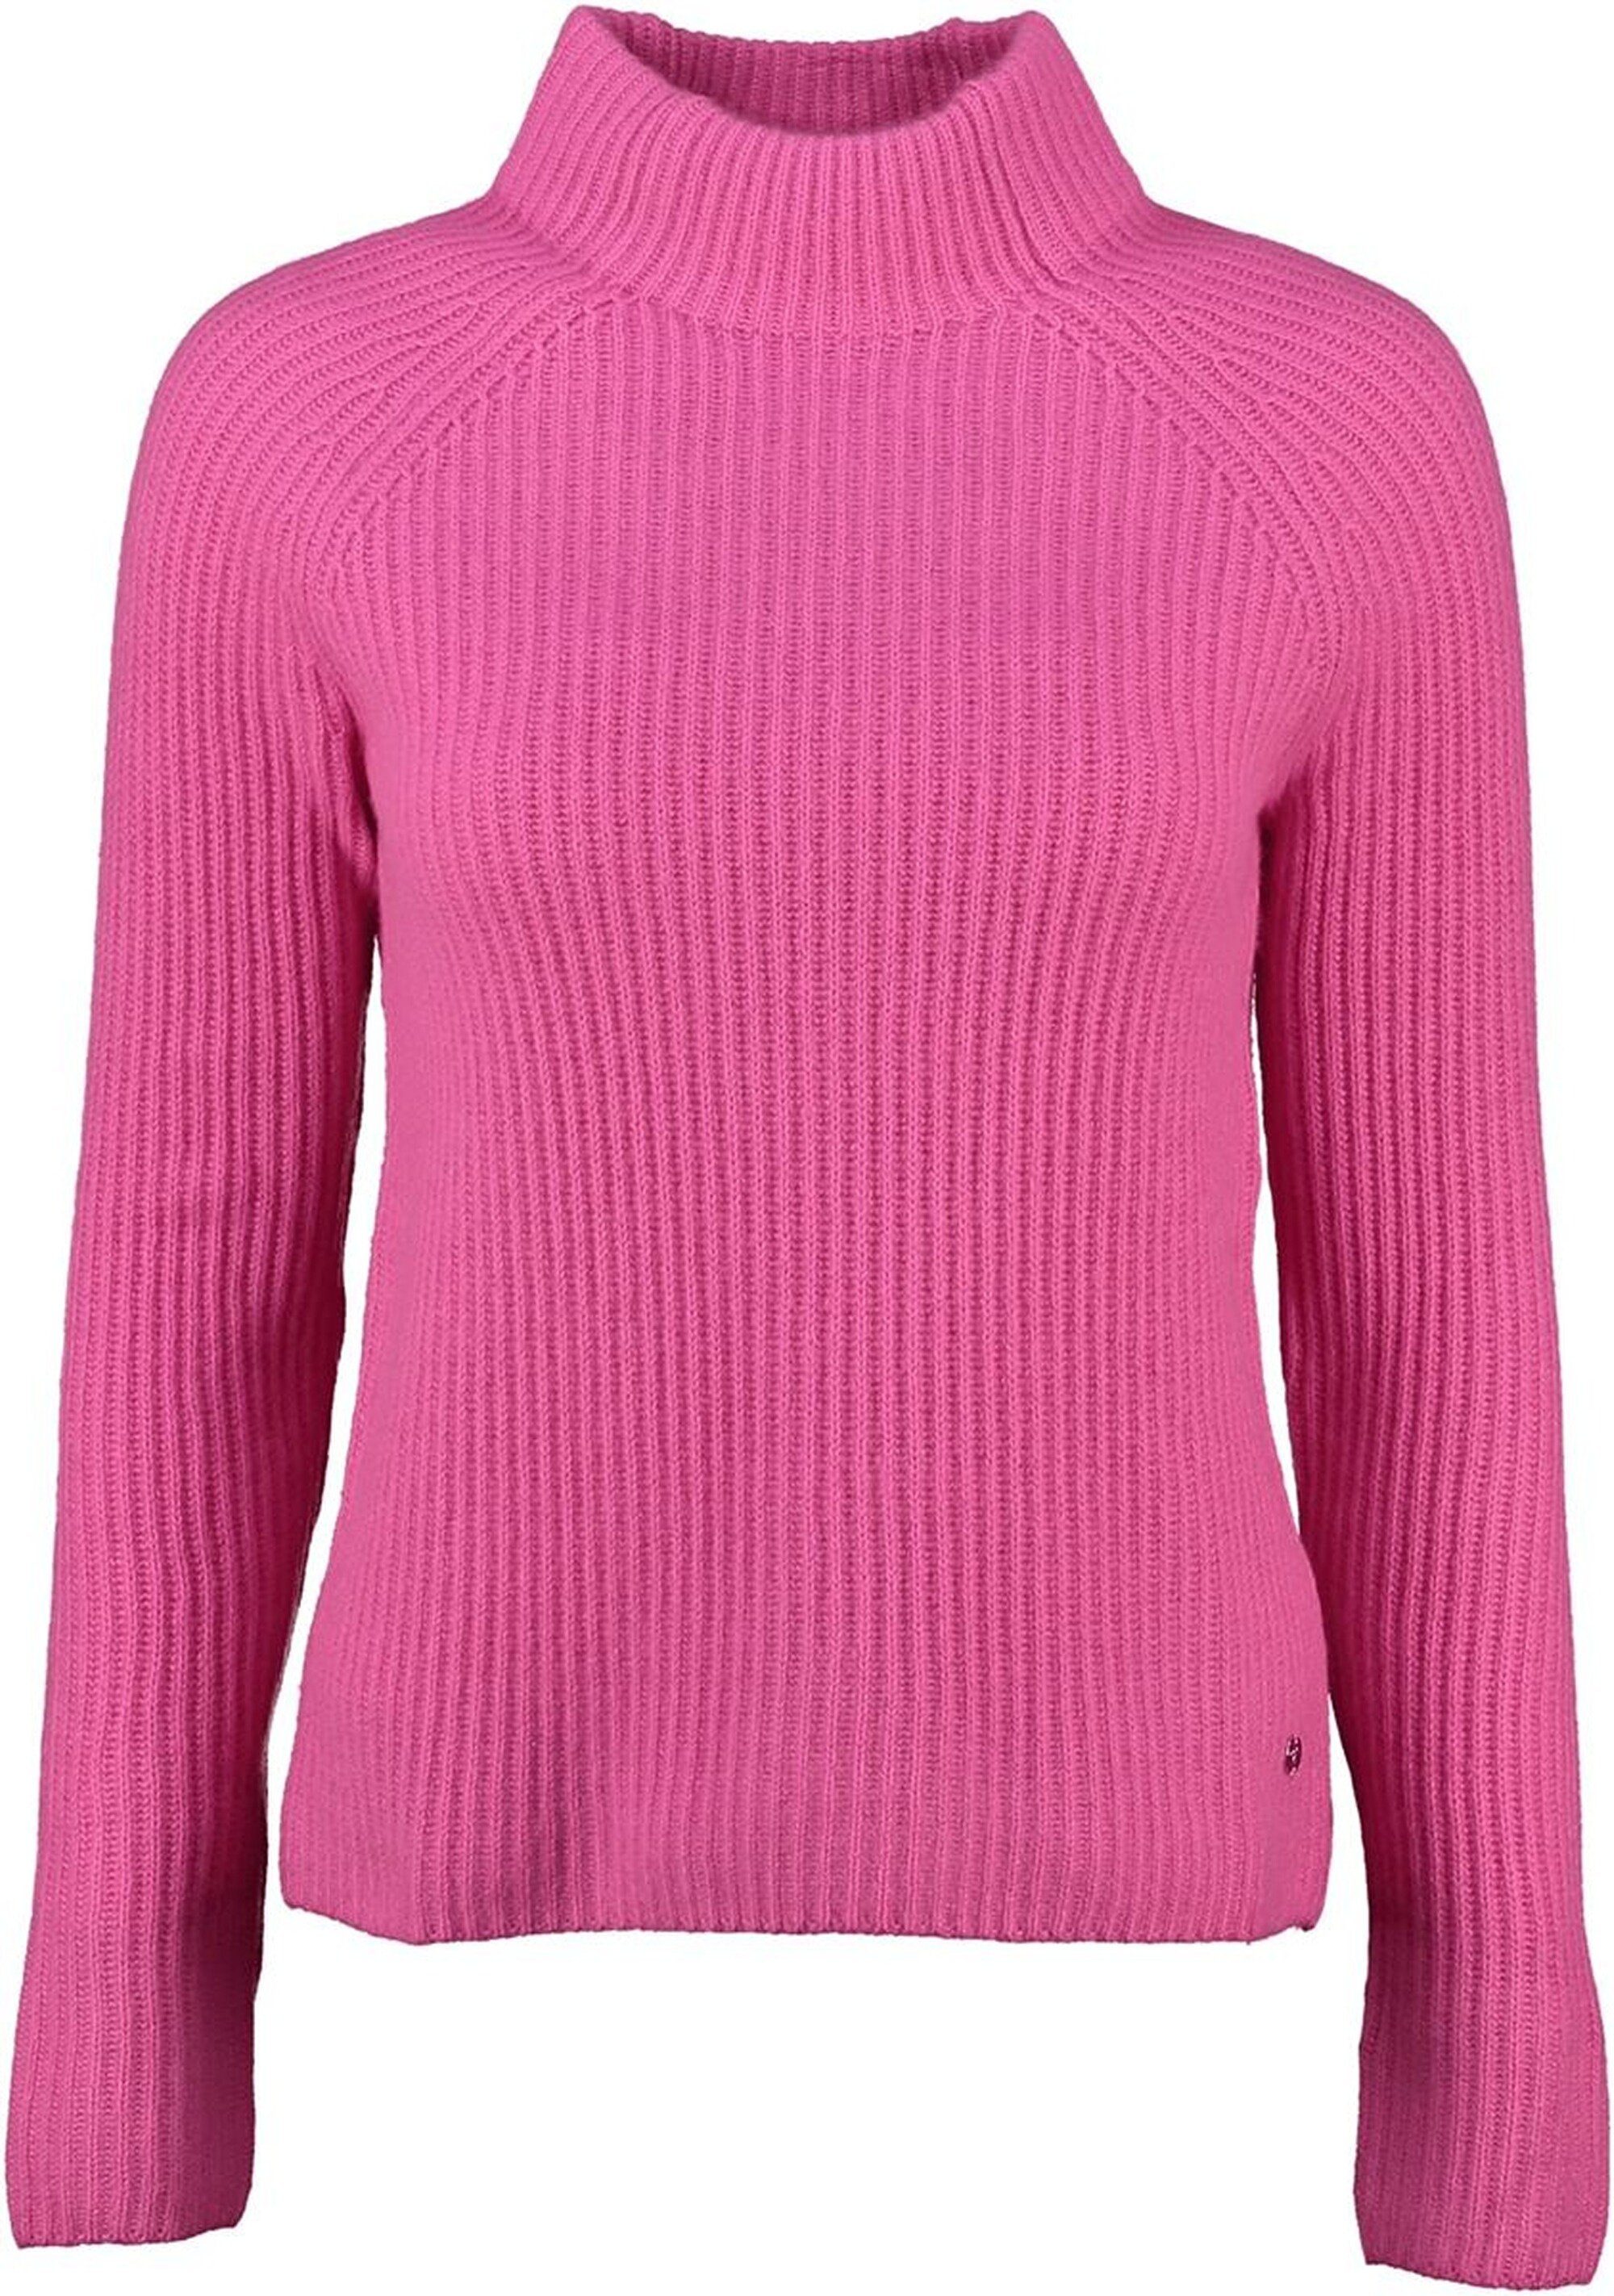 Strickpullover hochwertigem FYNCH-HATTON aus FYNCH Pullover HATTON pink Kaschmir